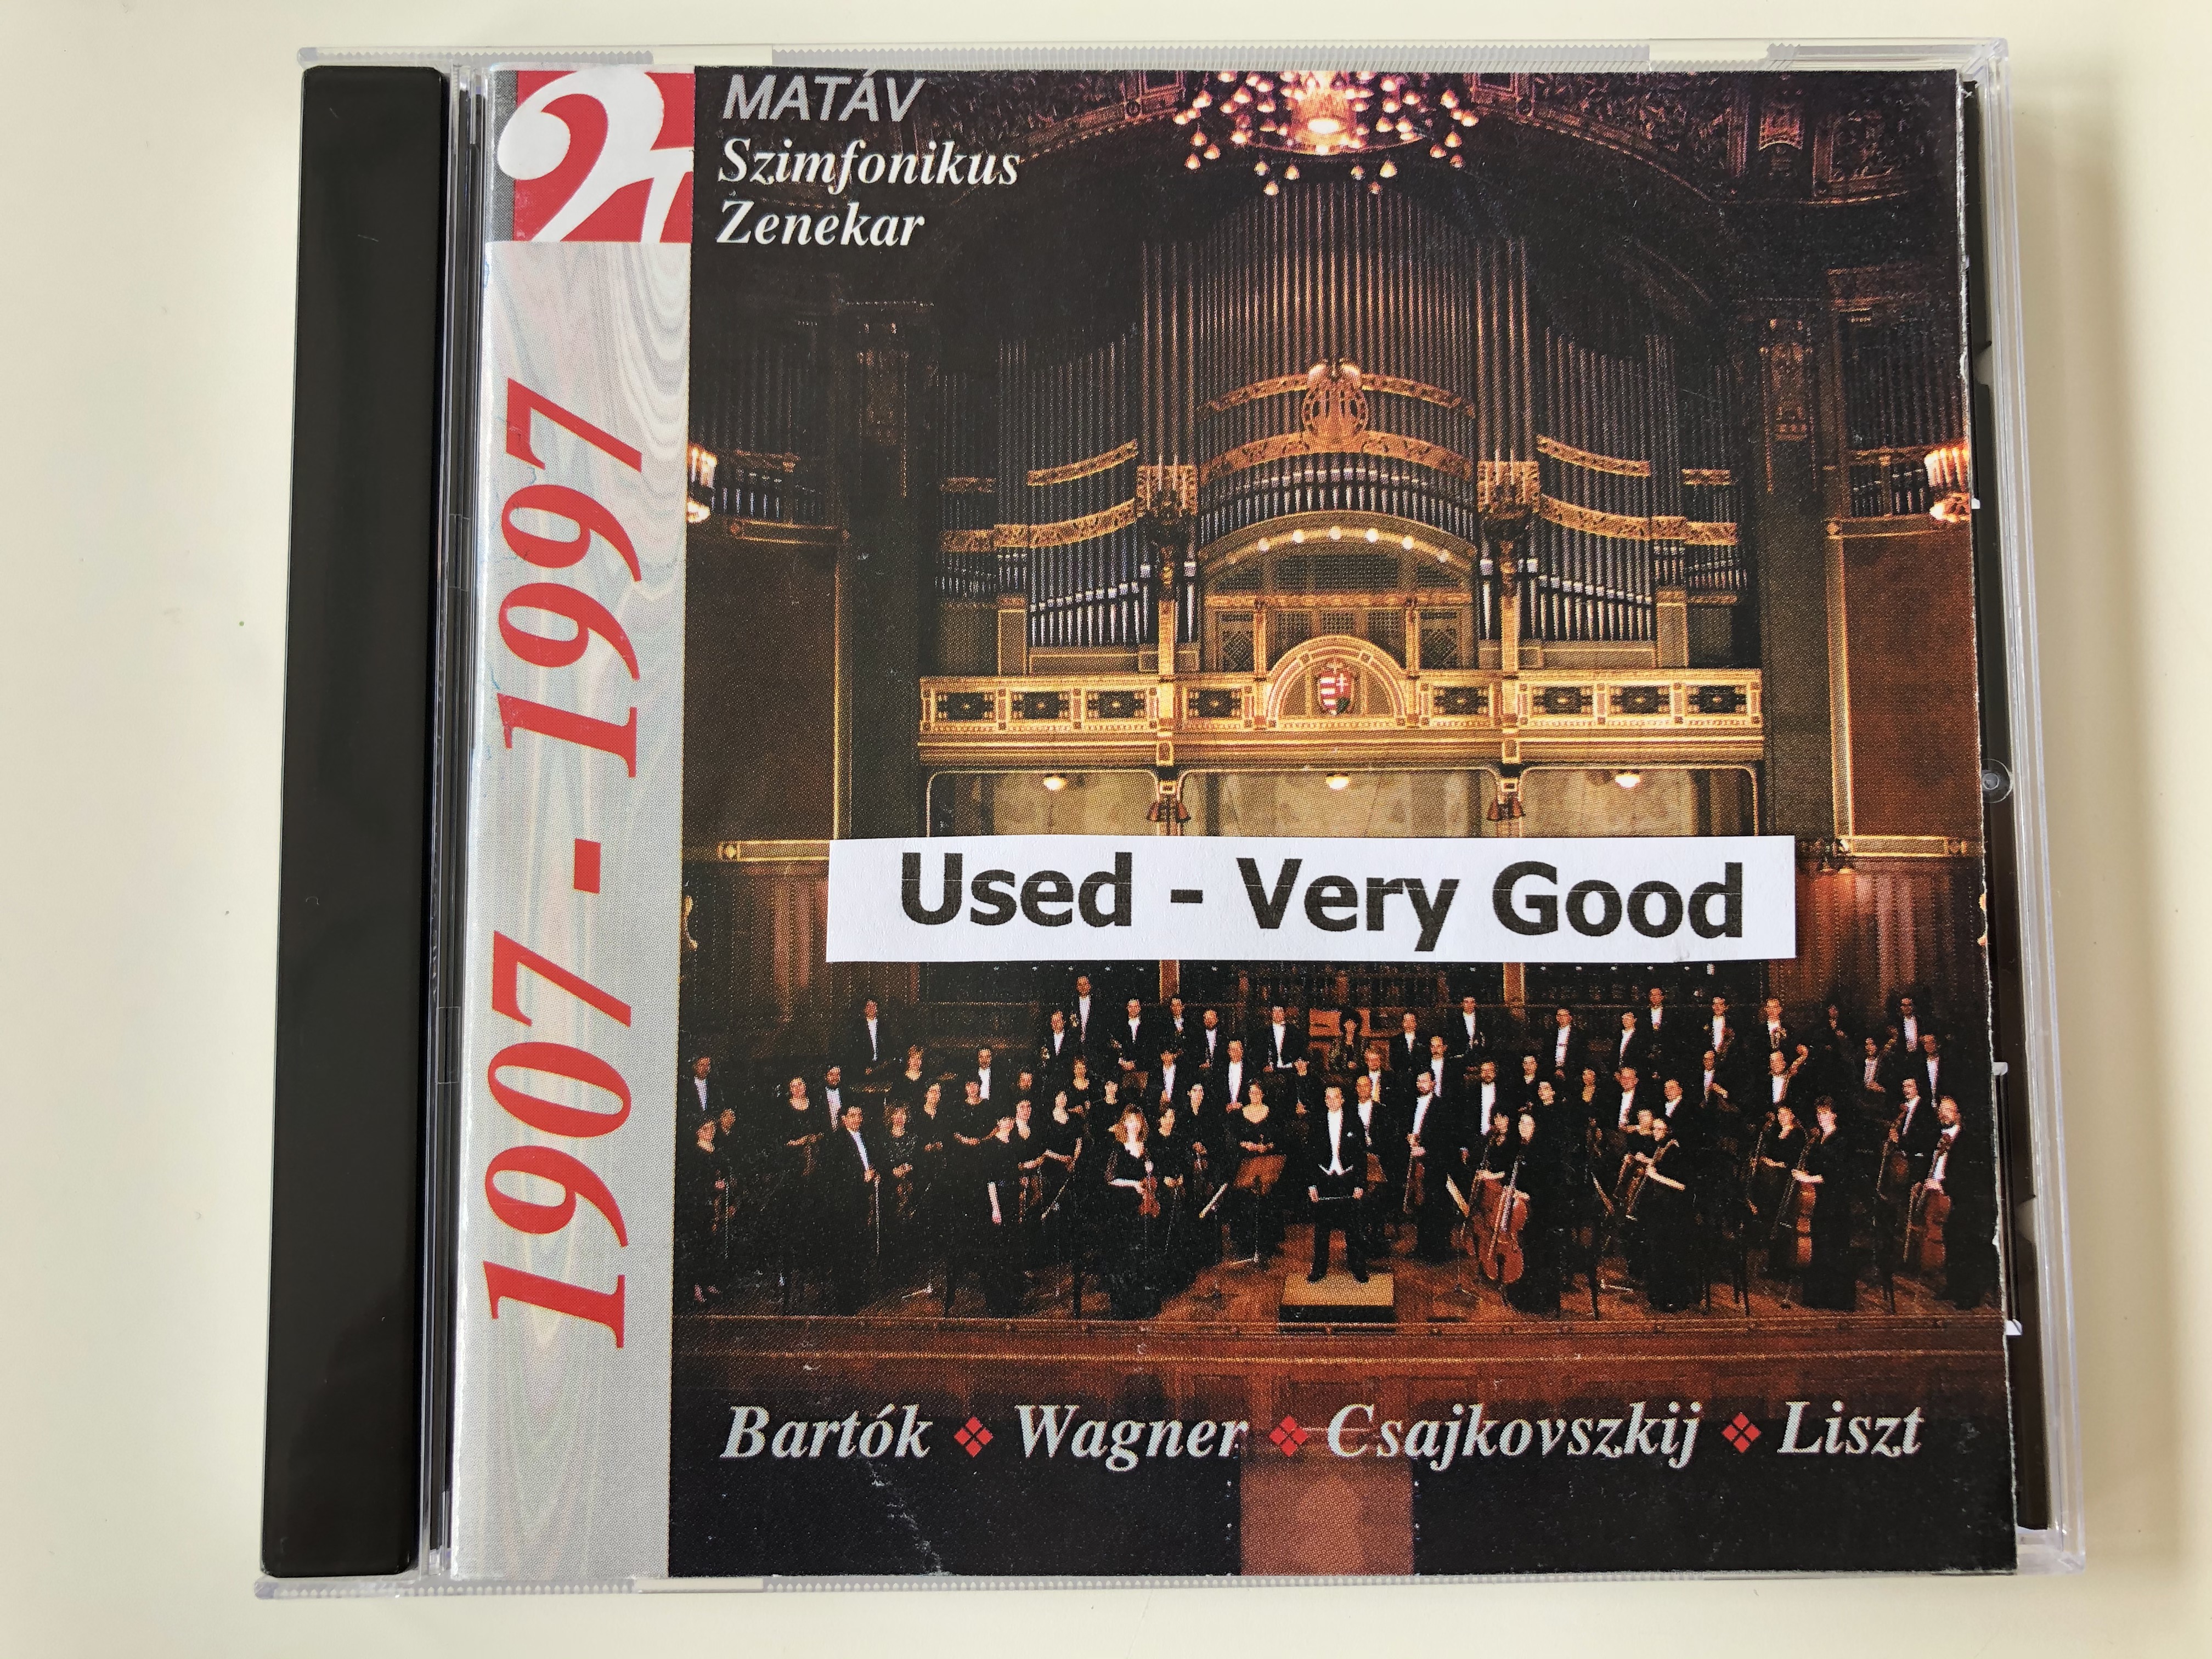 mat-v-szimf-nikus-zenekar-bartok-wagner-csajkovszkij-liszt-1907-1997-matav-music-house-audio-cd-1997-stereo-mhso-02-2-.jpg